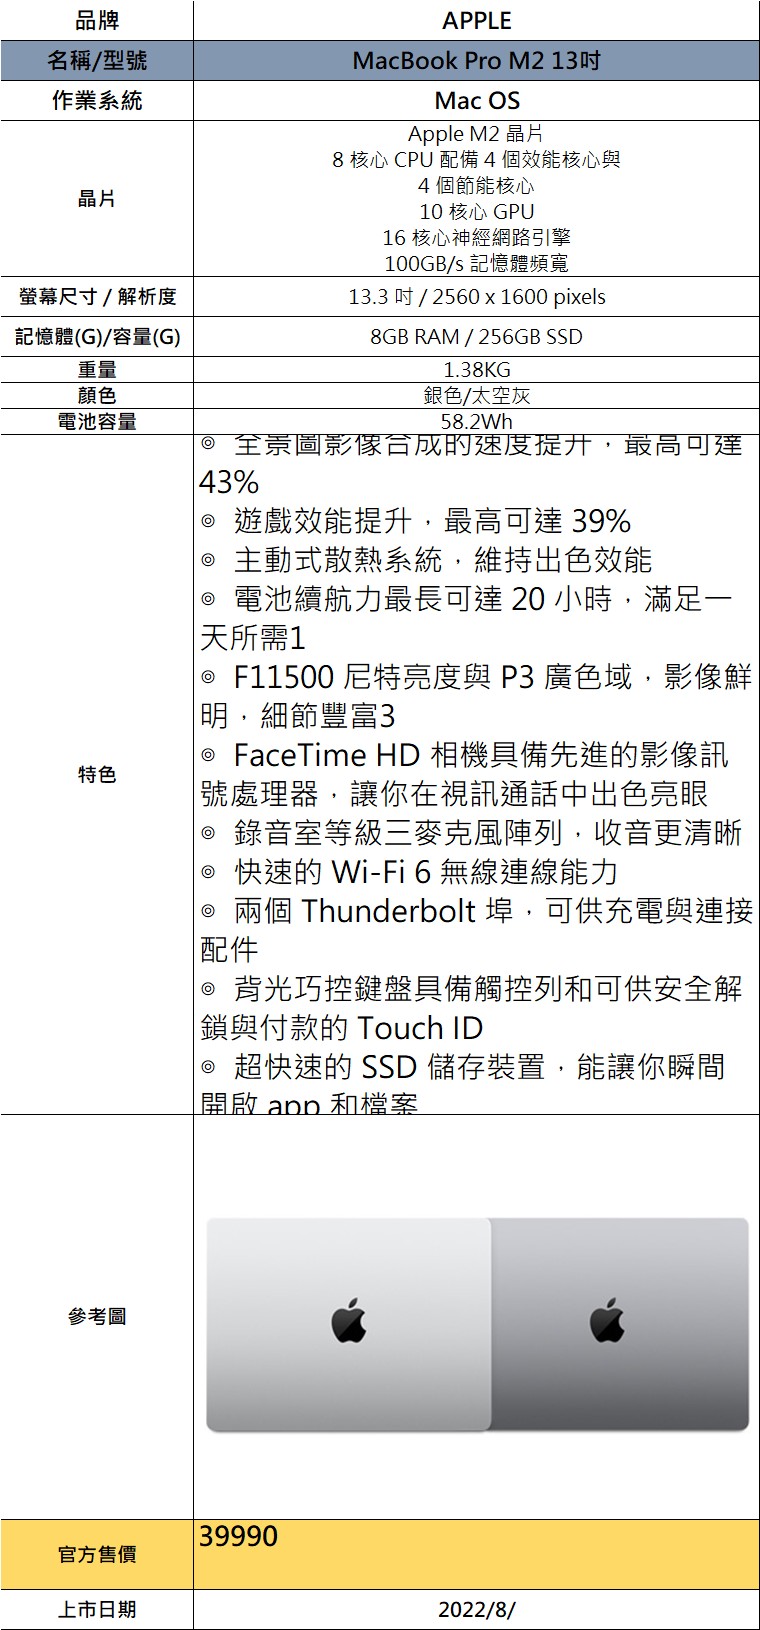 macbook pro m2 13規格表